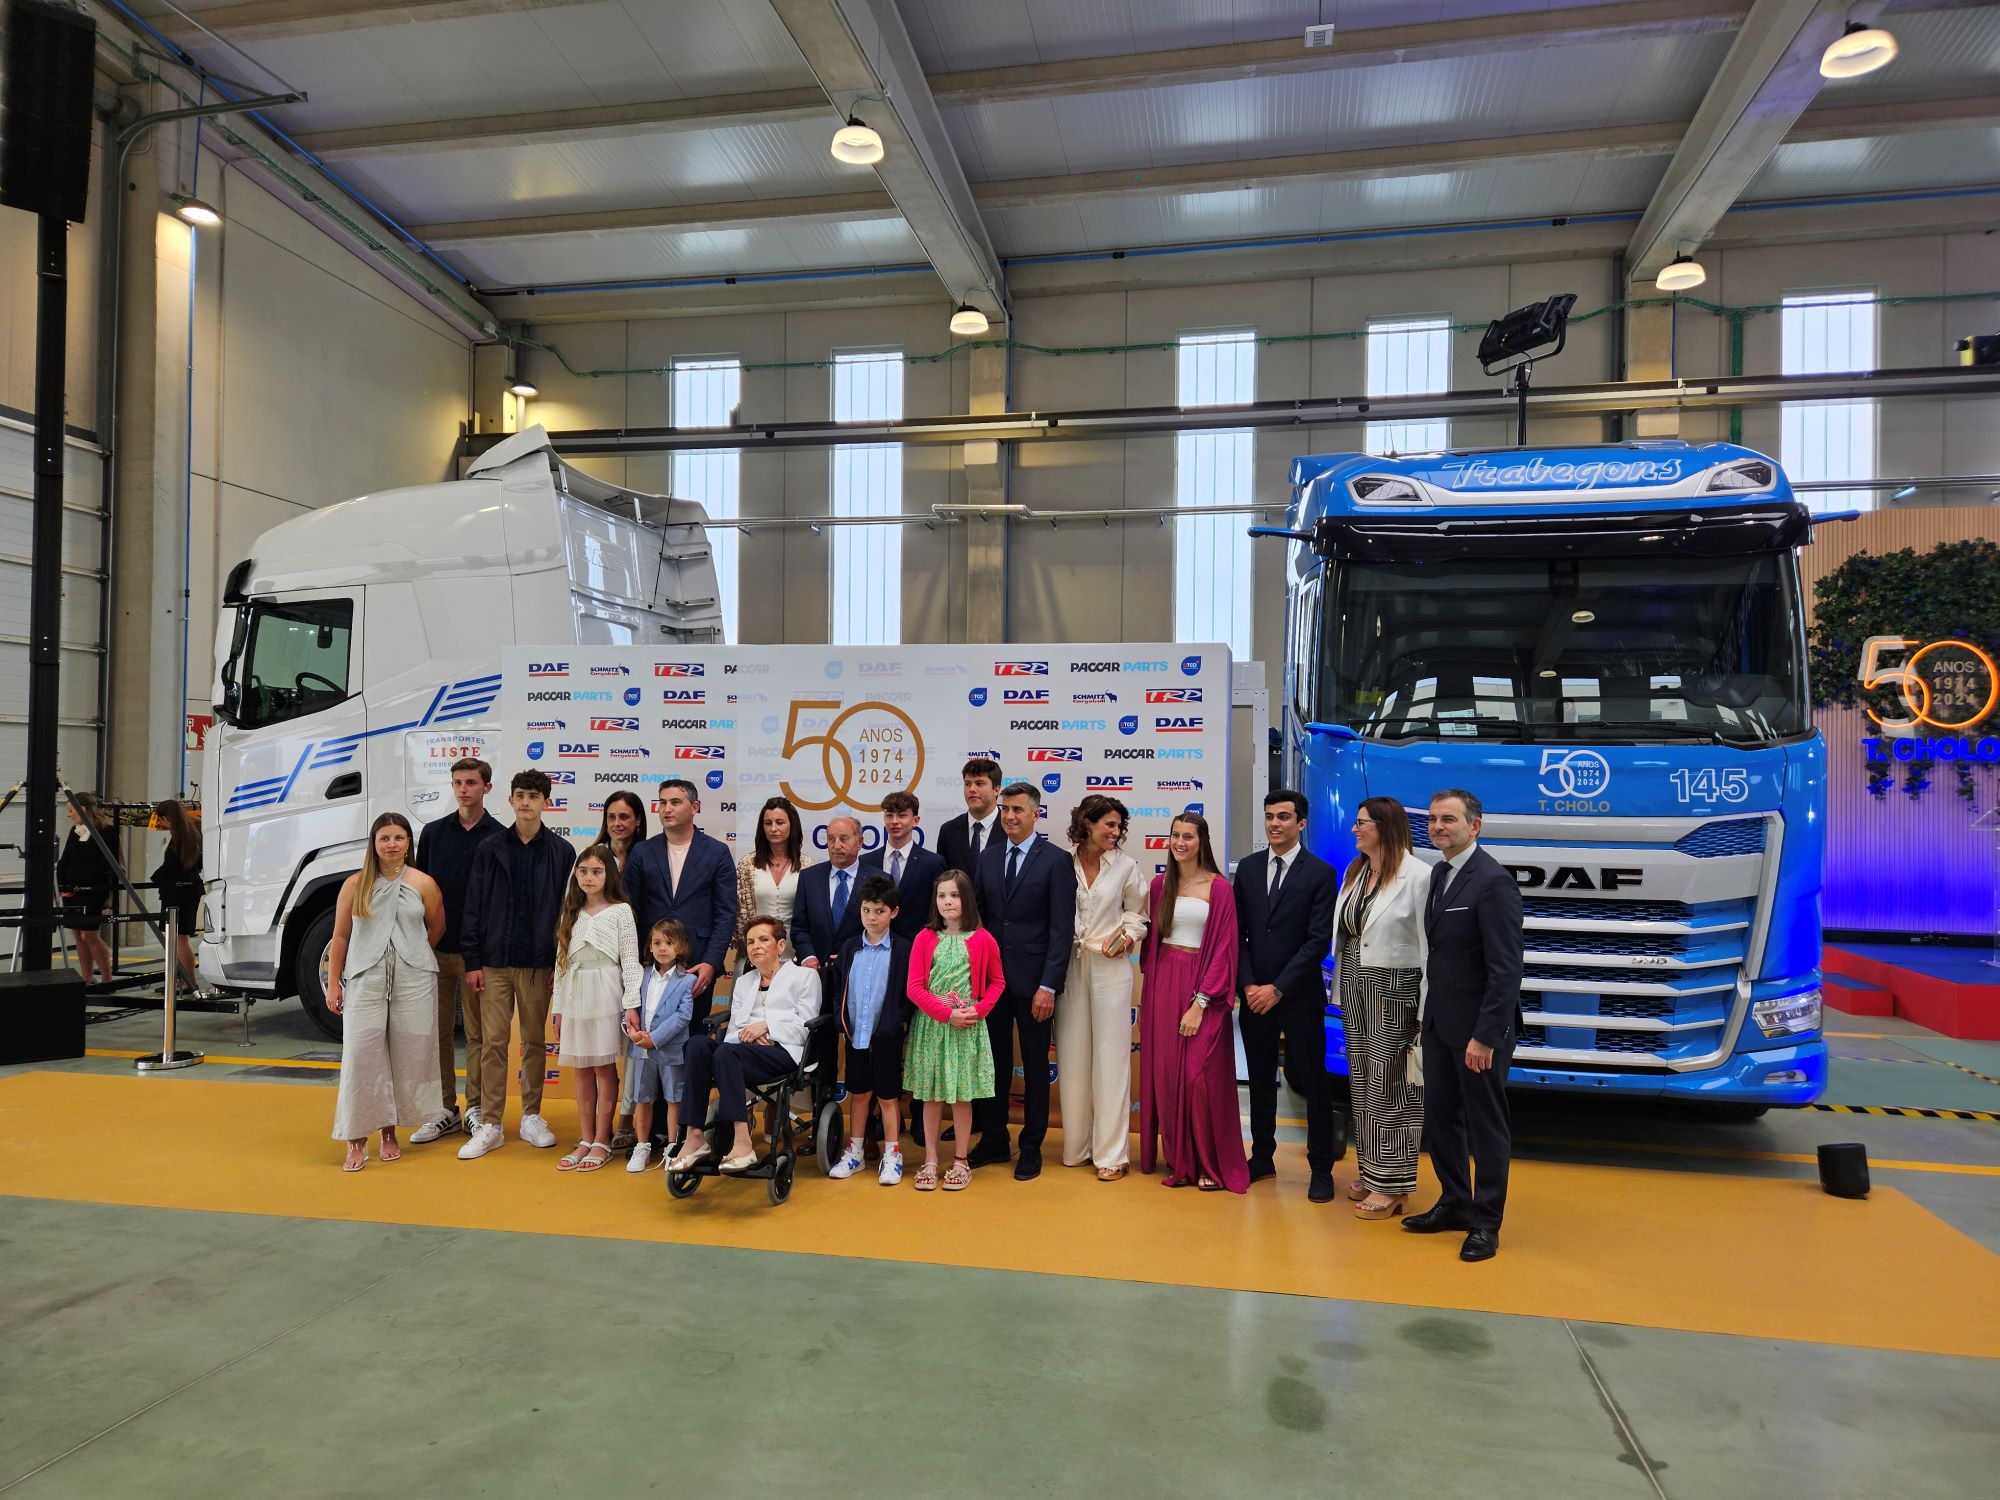 Talleres Cholo sigue siendo una empresa familiar, cconcesionario oficial en Santiago de Compostela de DAF Trucks tras 50 años de actividad.